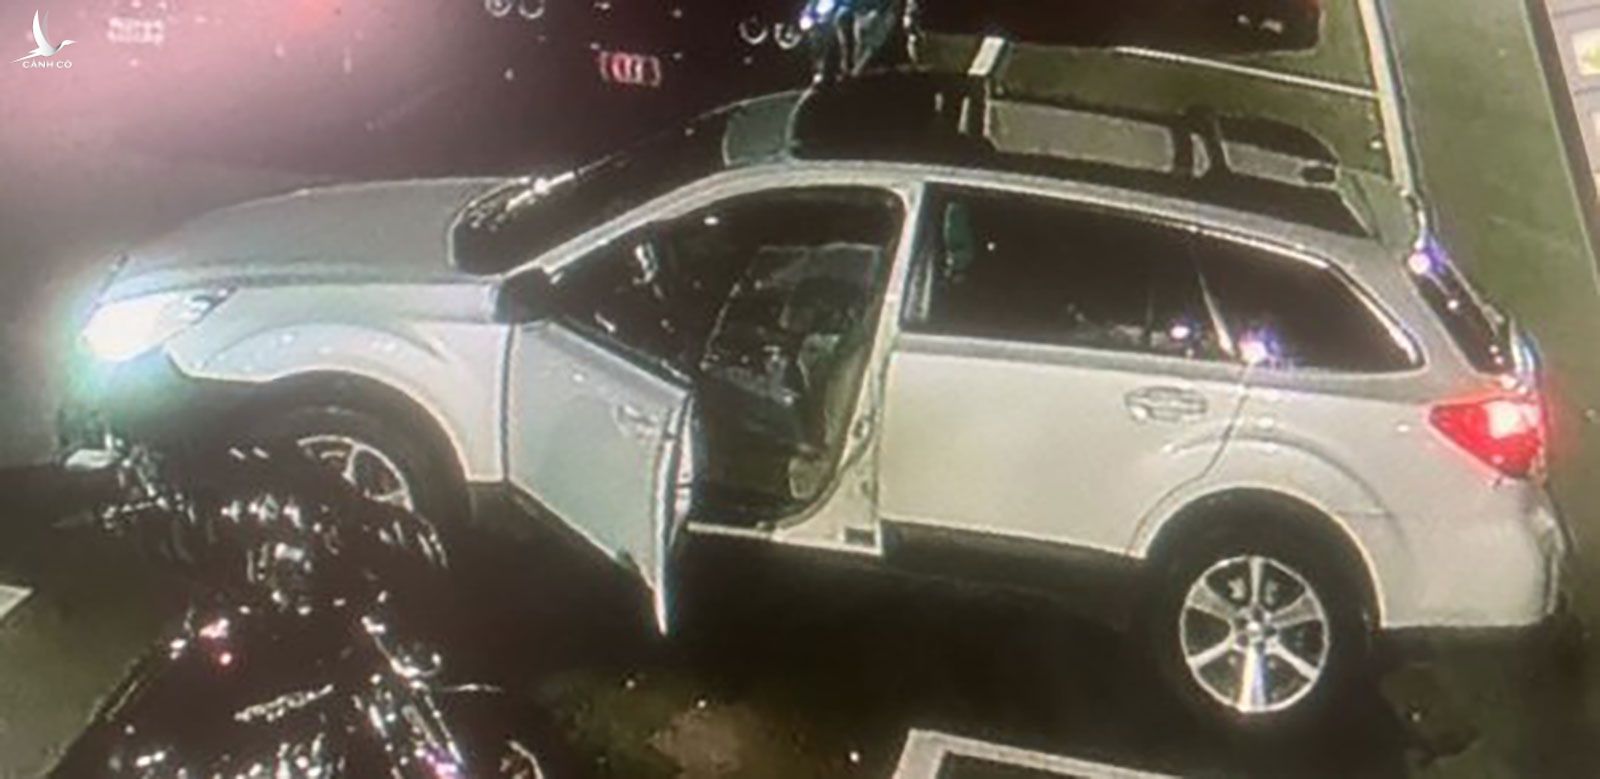 Xe của nghi can đã được tìm thấy ở thị trấn Lisbon, bang Maine, cách thành phố xảy ra xả súng gần 13 km.